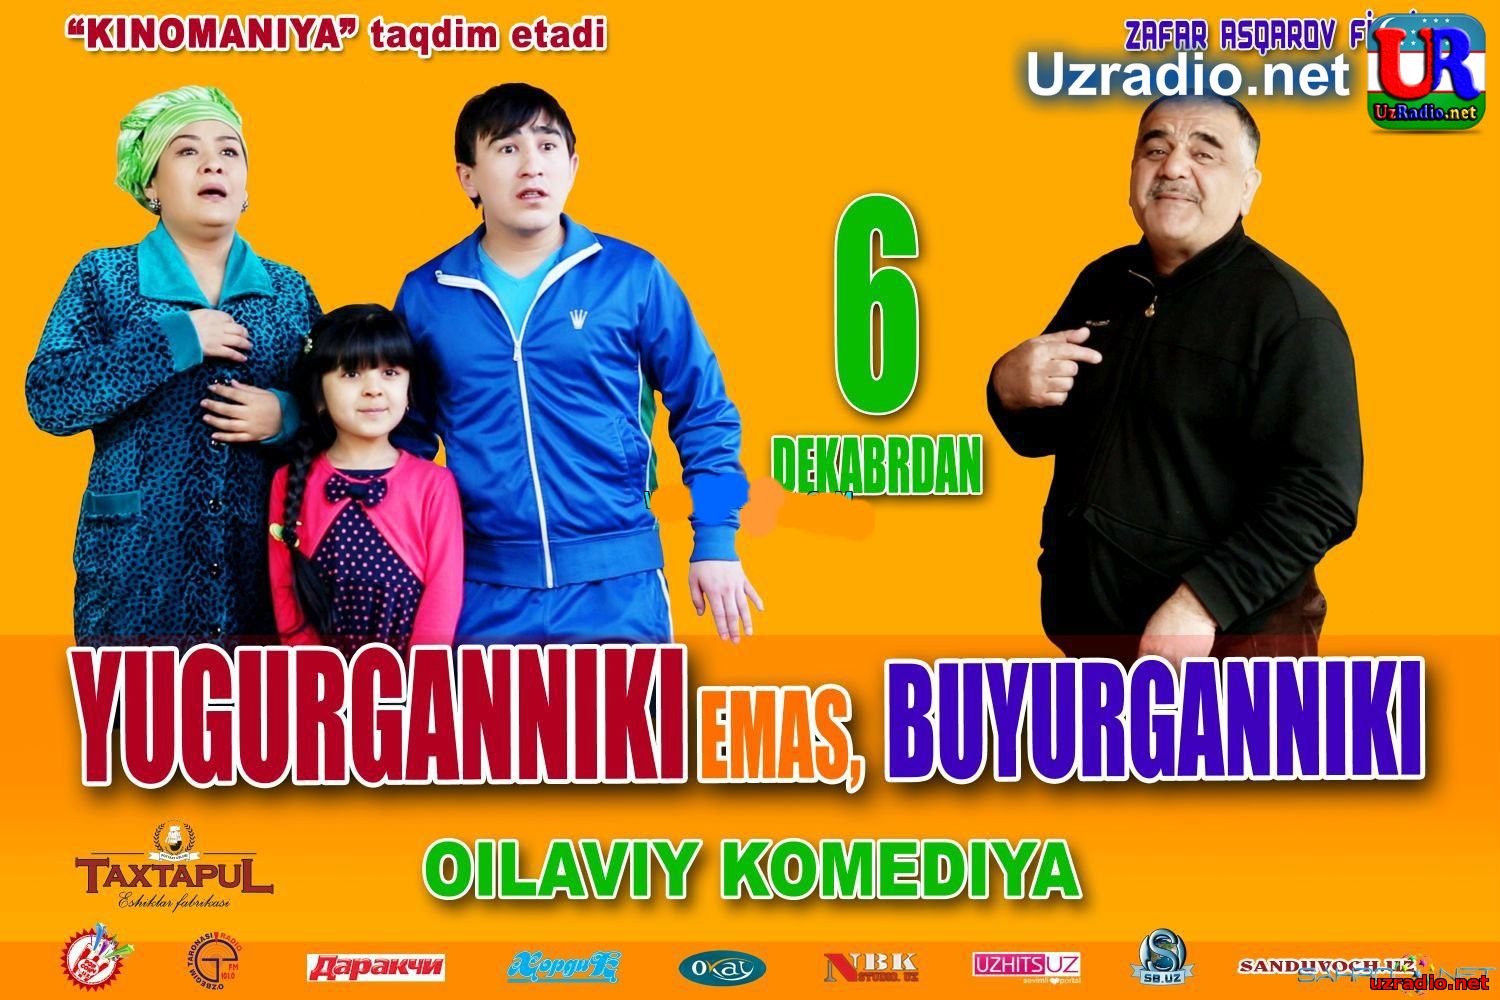 Yugurganniki emas, buyurganniki - Yangi o'zbek kinoga treyler смотреть онлайн